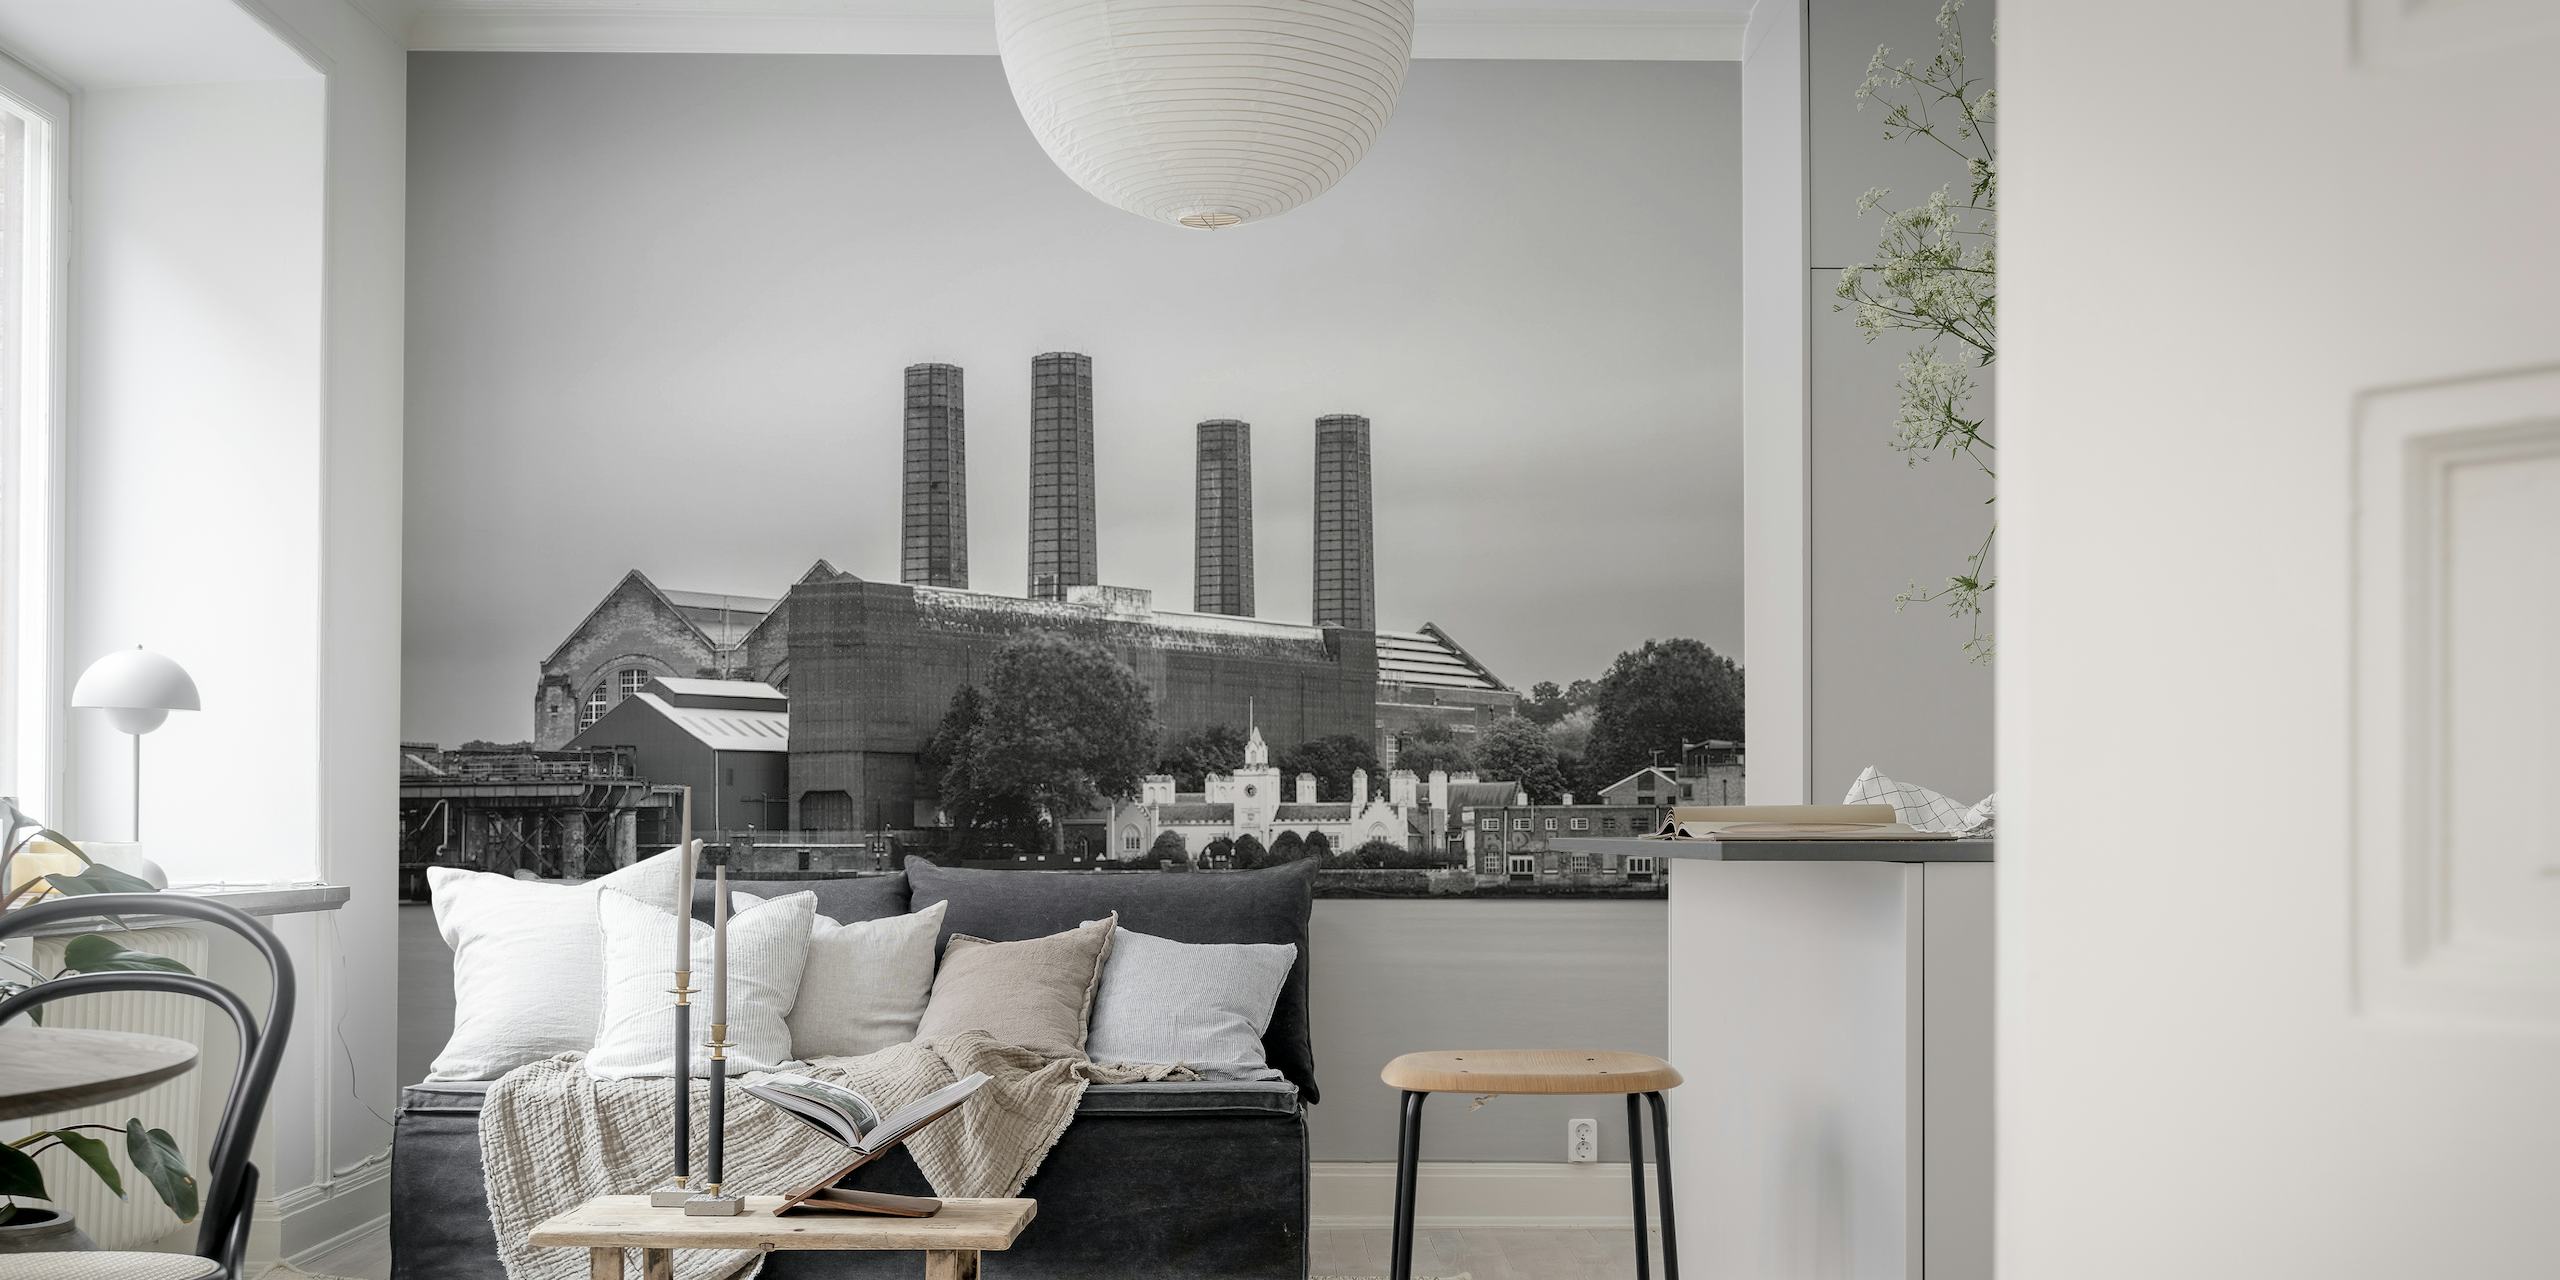 Mural en blanco y negro de la central eléctrica de Greenwich con un aspecto industrial clásico